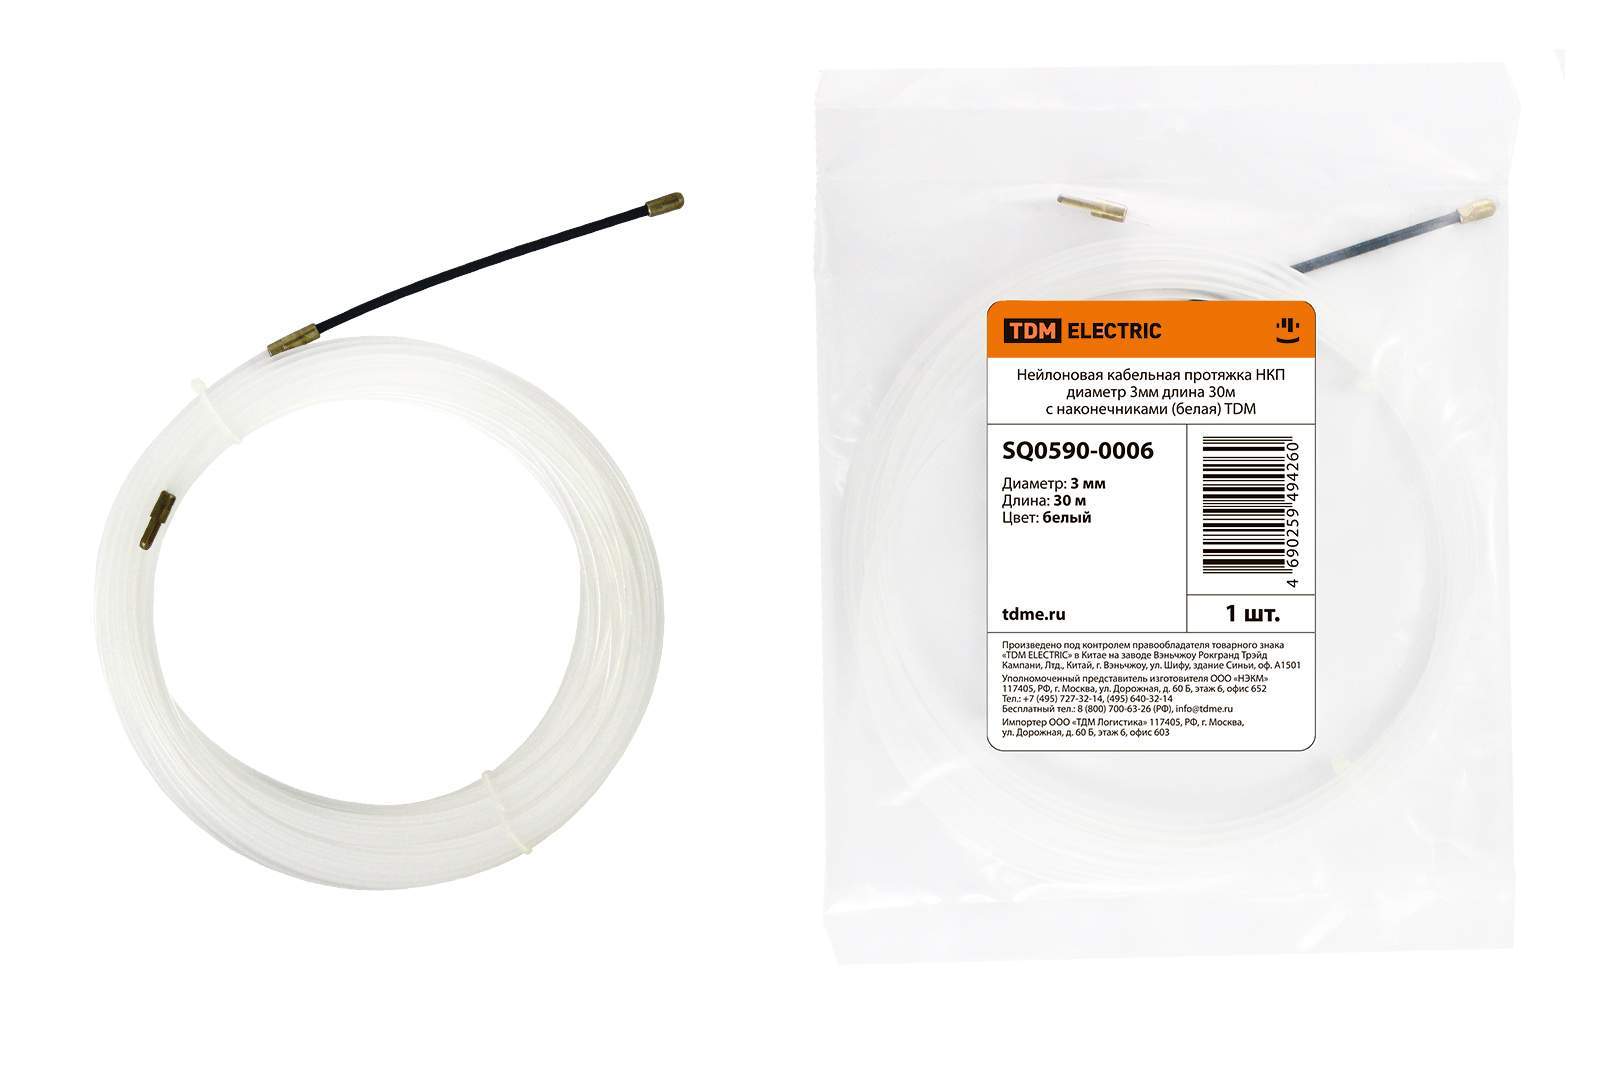 нейлоновая кабельная протяжка нкп диаметр 3мм длина 30м с наконечниками (белая) tdm от BTSprom.by